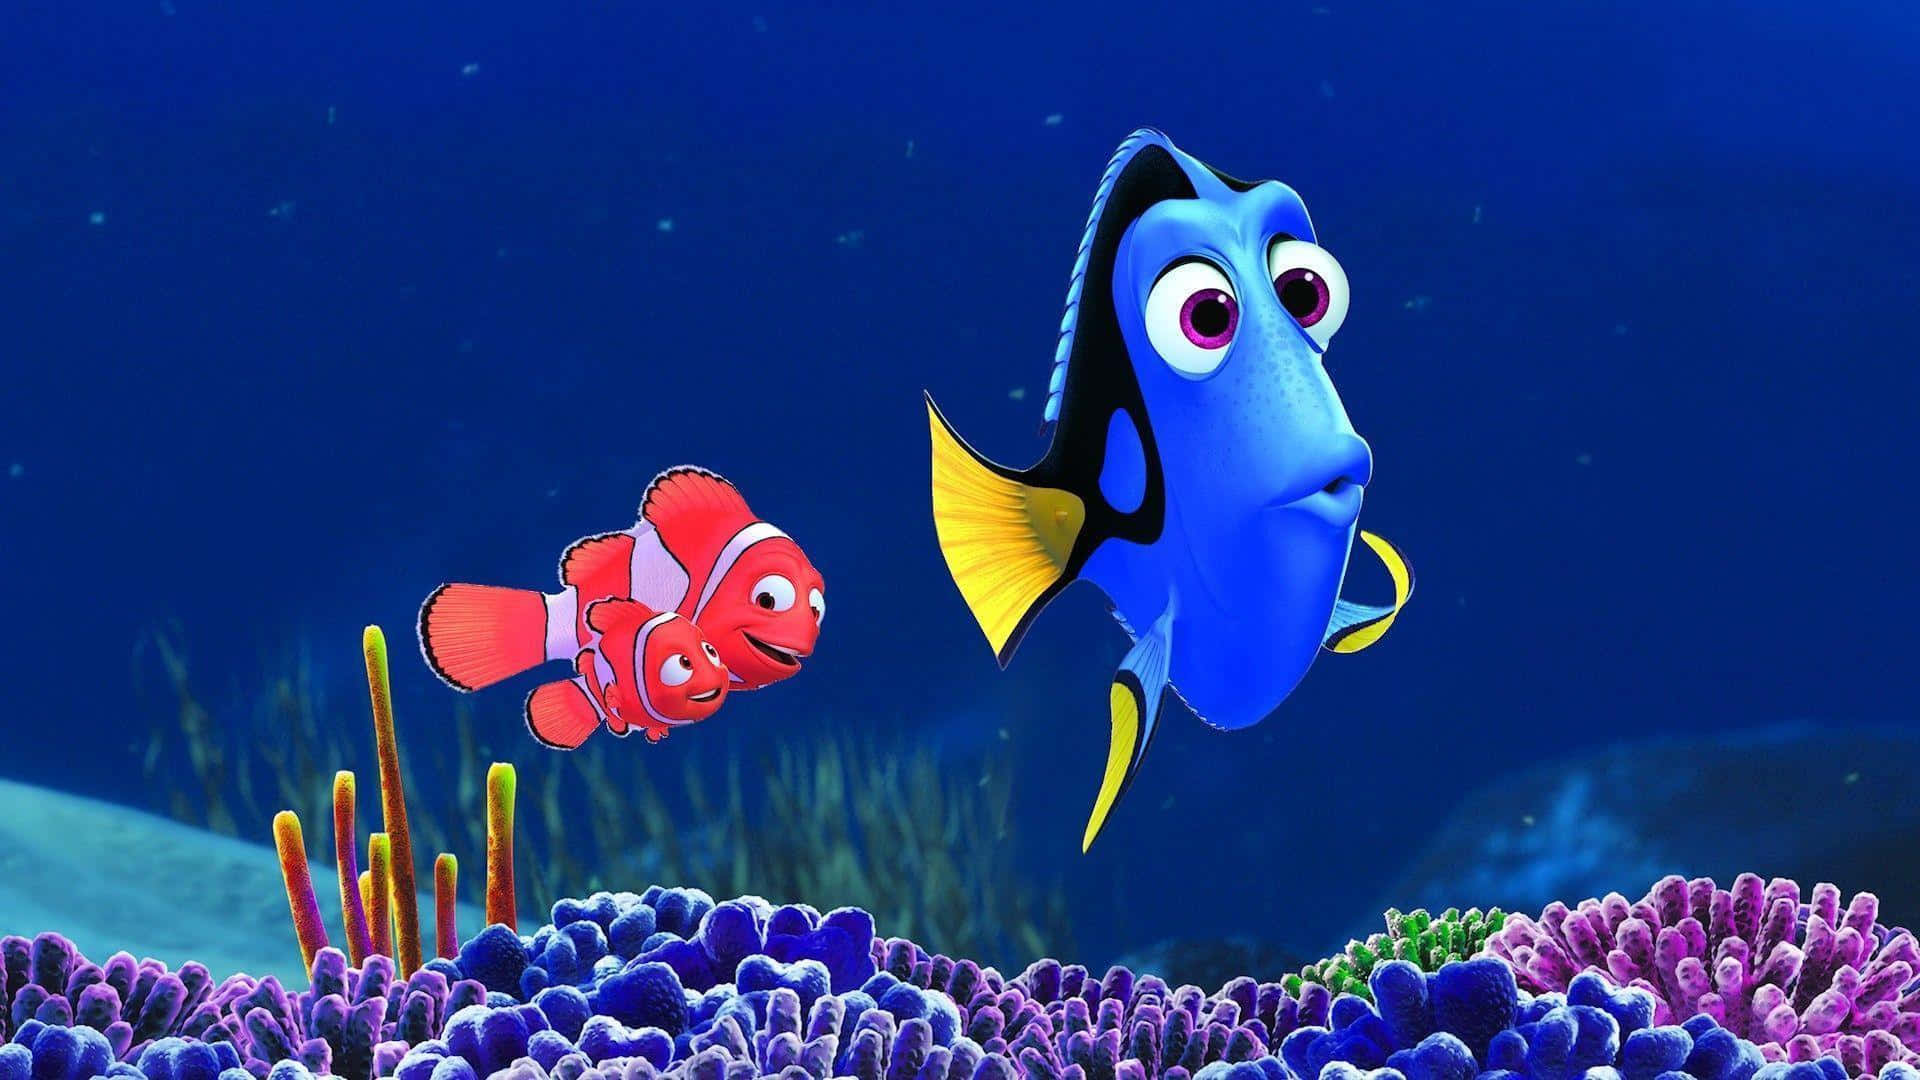 Bedste Disney Baggrund hovedpersoner af Finding Nemo